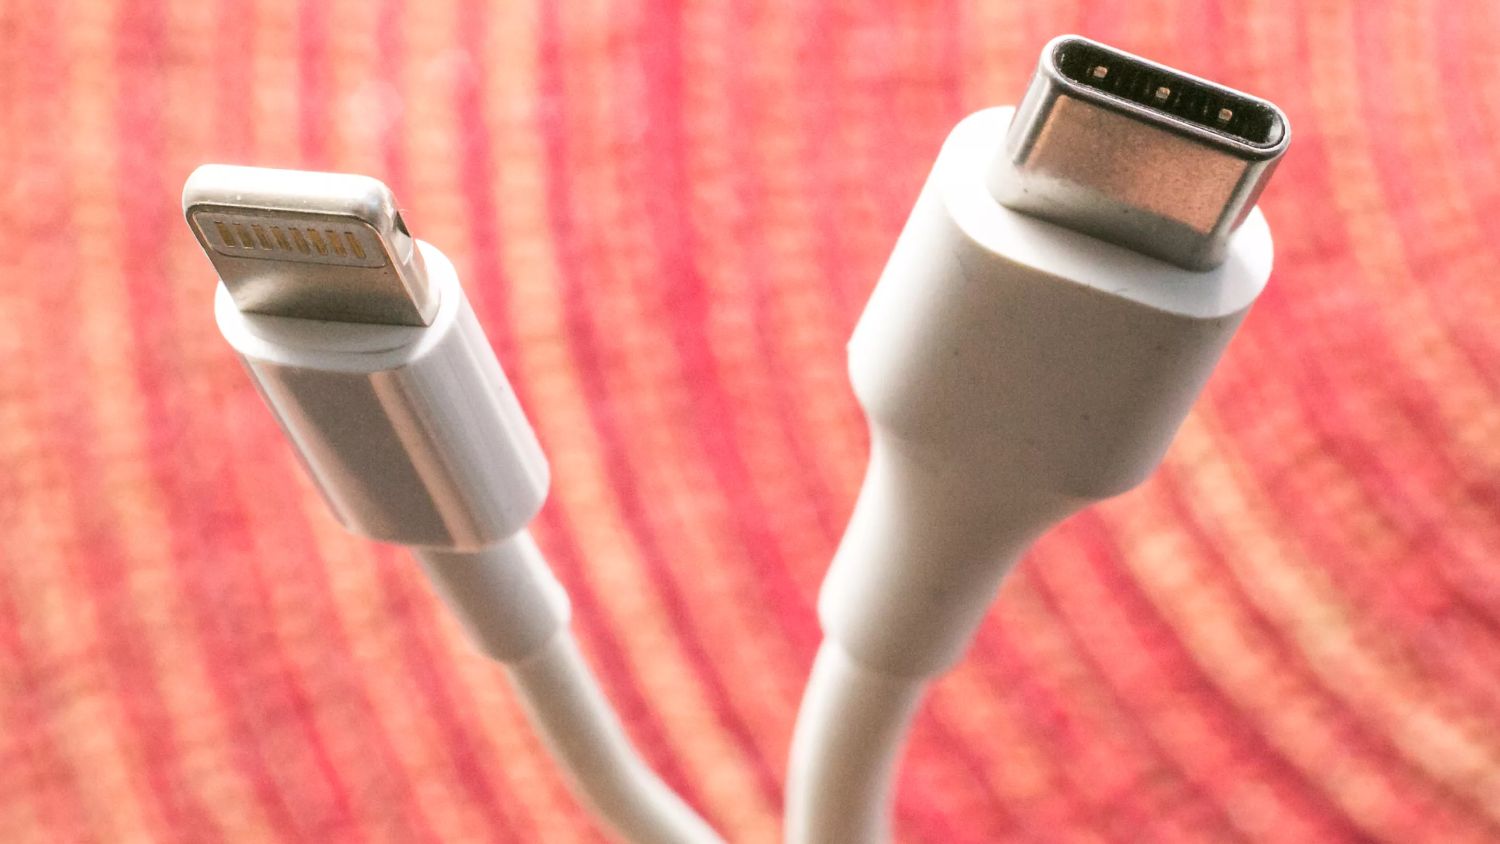 La Comisión Europea puede obligar a Apple a cambiar el conector Lightning del iPhone por el USB